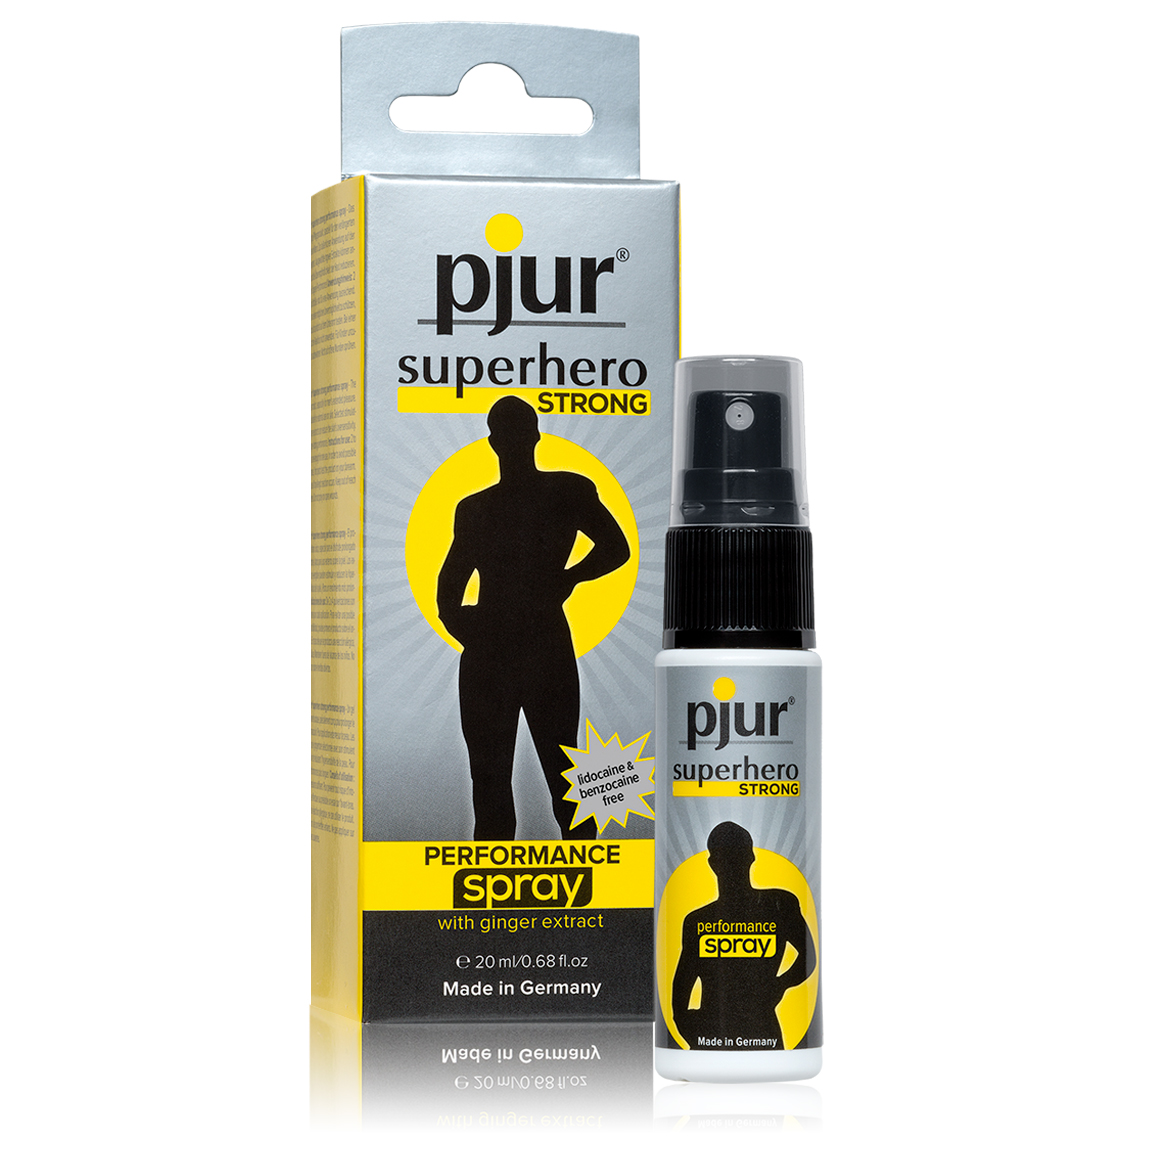 spray-retardante-pjur-superhero-strong-20ml-pharma.jpg